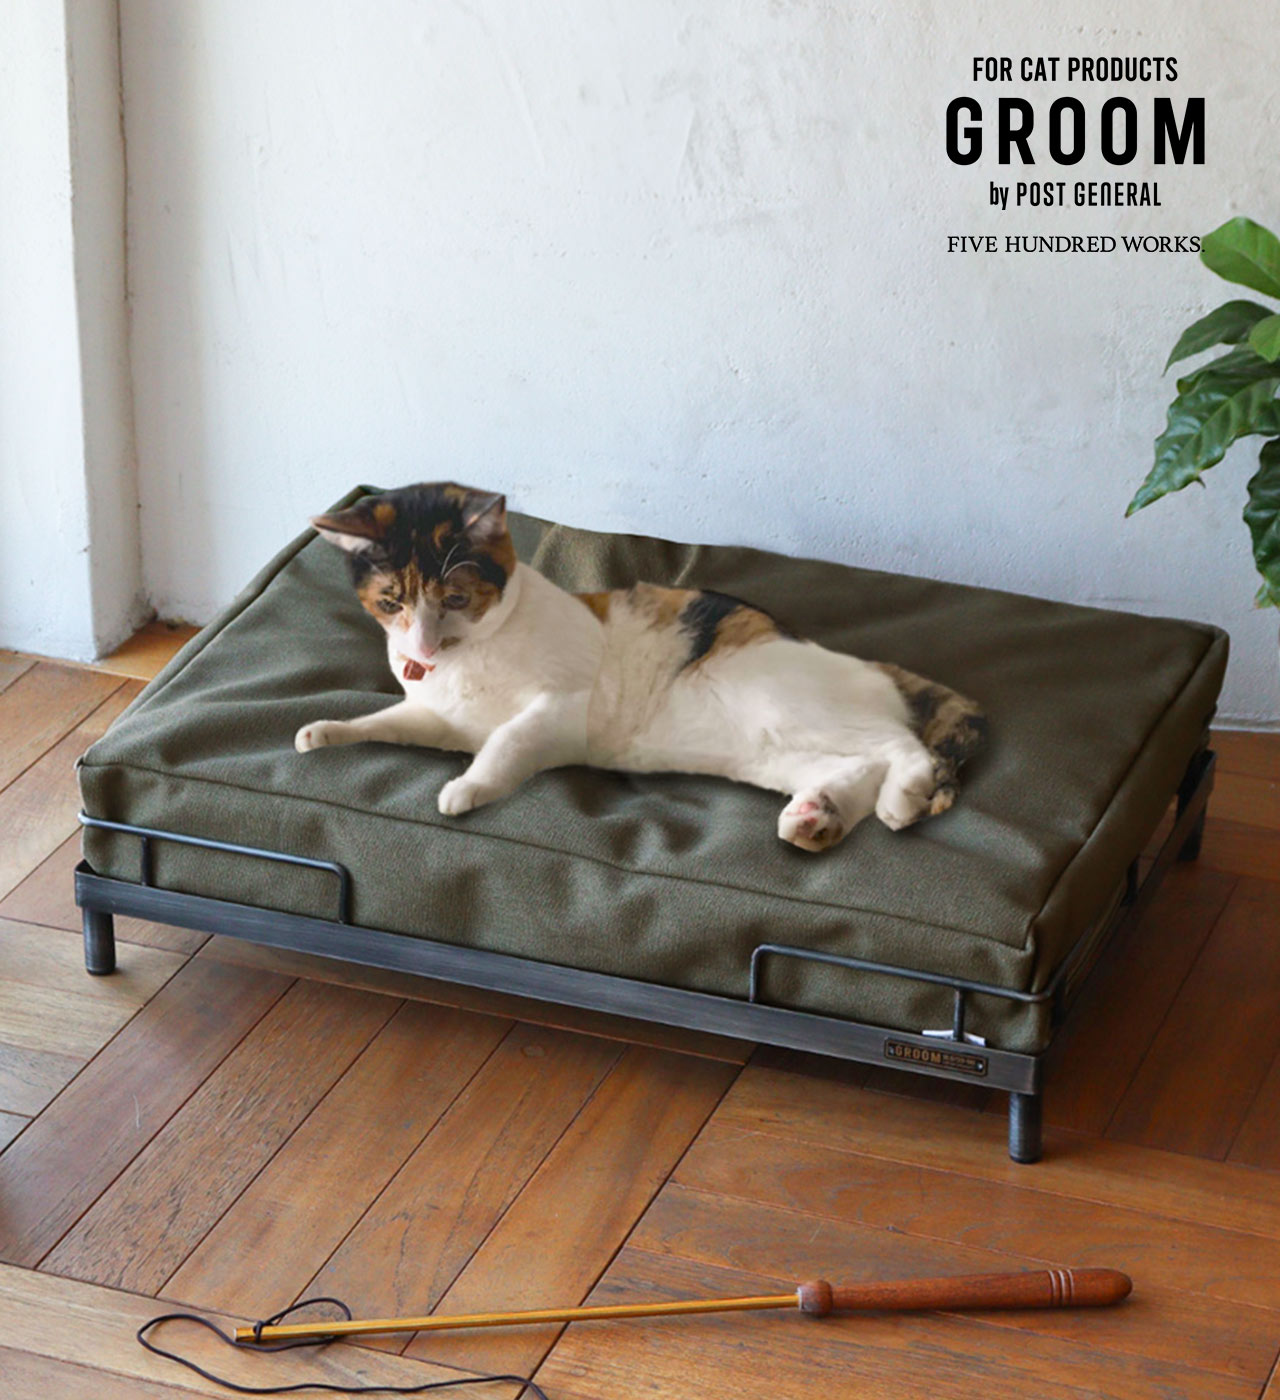 【公式】グルーム アイアンベッド GROOM 500WORKS.キャット 猫 小型犬 ベッド べっど 猫用家具ペット用ベッド インダストリアル インテリア ハンドメイドペット ペット用品 かっこいい クッシ…